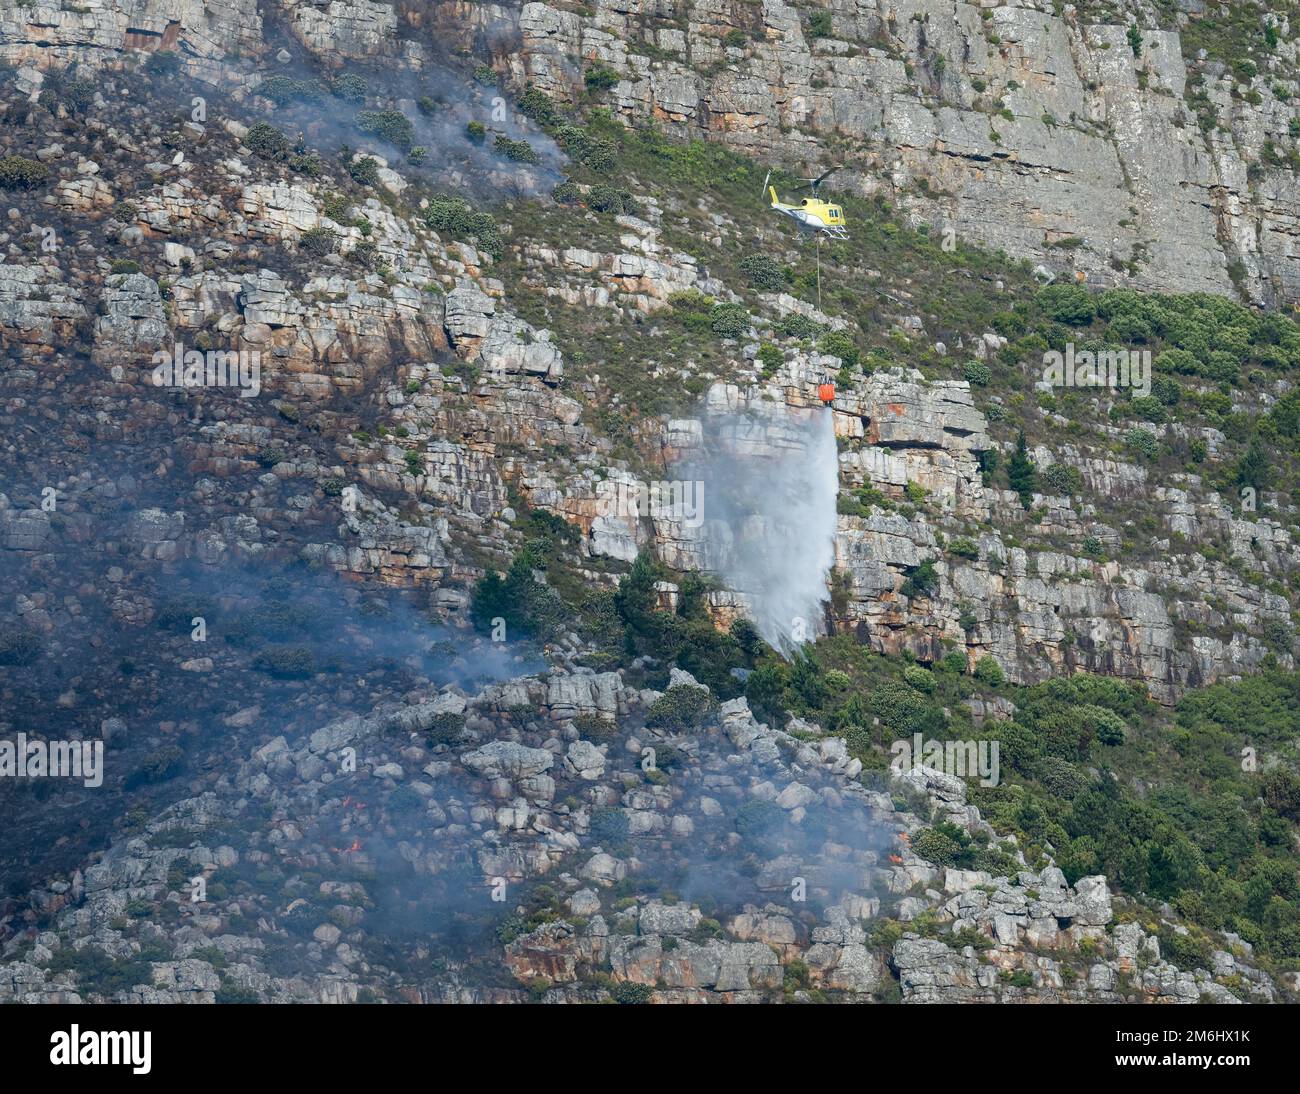 Ein Hubschrauber, der Wasser abwirft, um das Feuer in den Bergen zu löschen. Westkap, Südafrika. Stockfoto